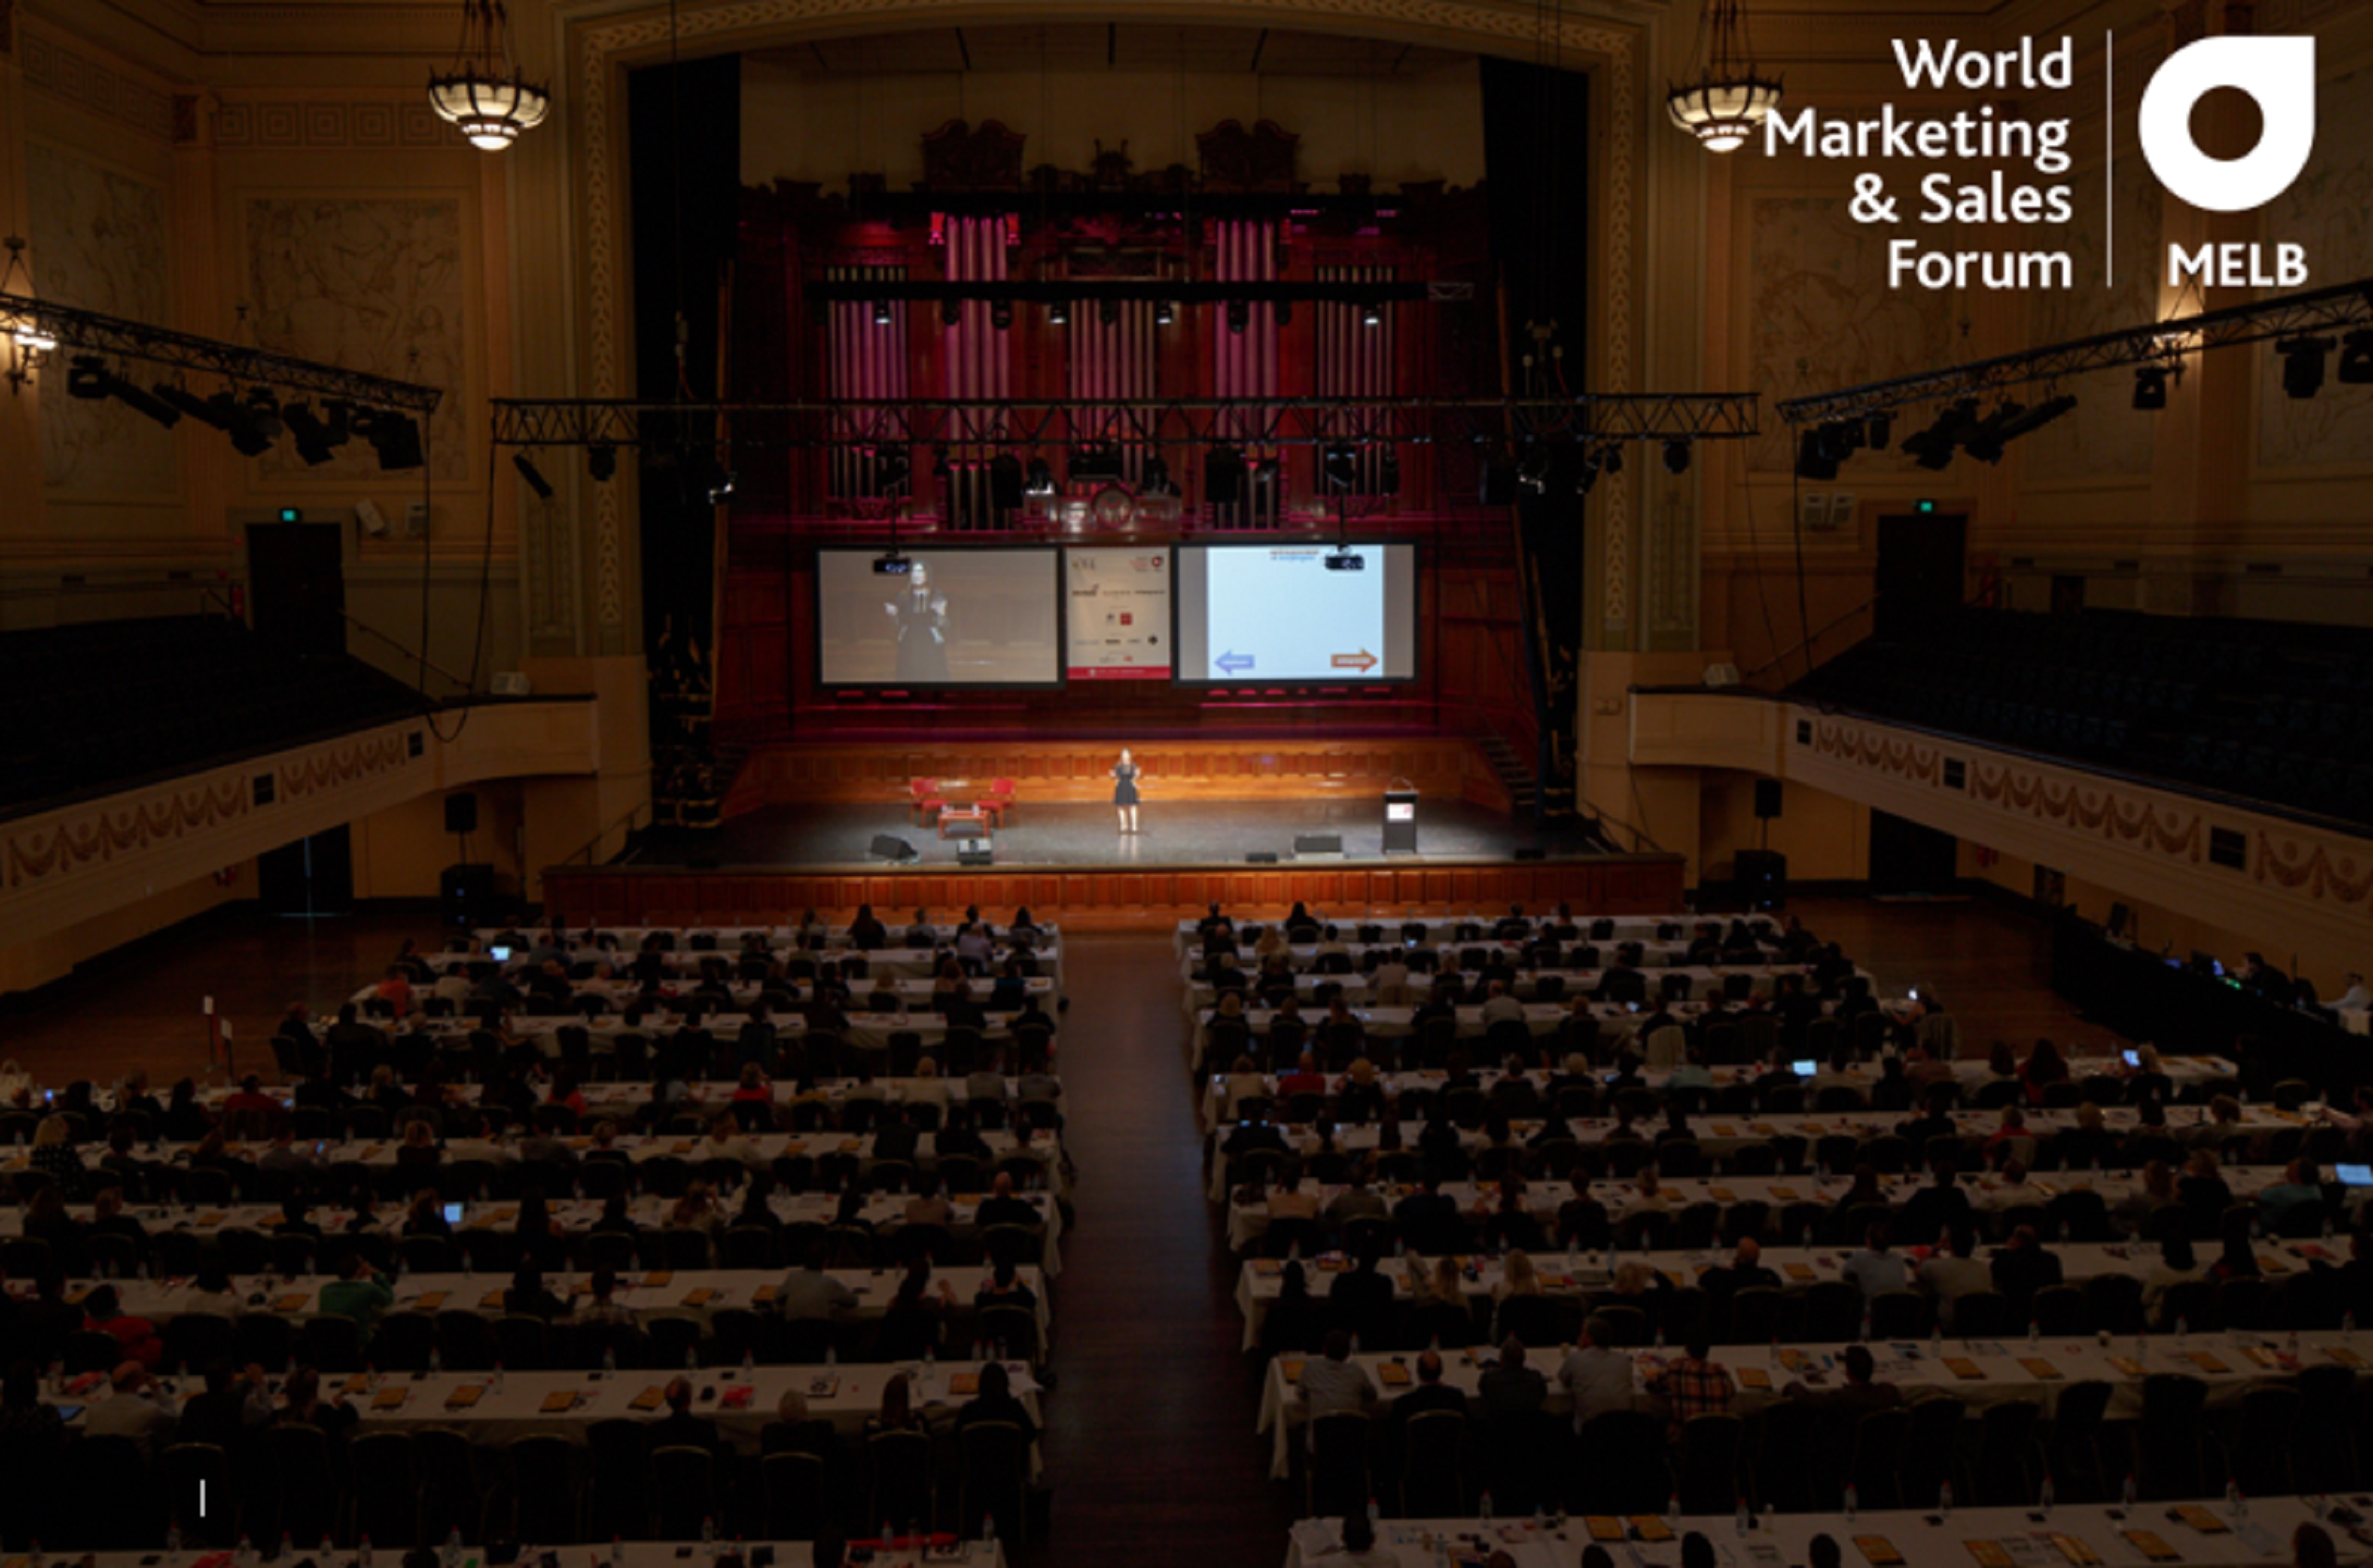 World Marketing & Sales Forum Melbourne 2016